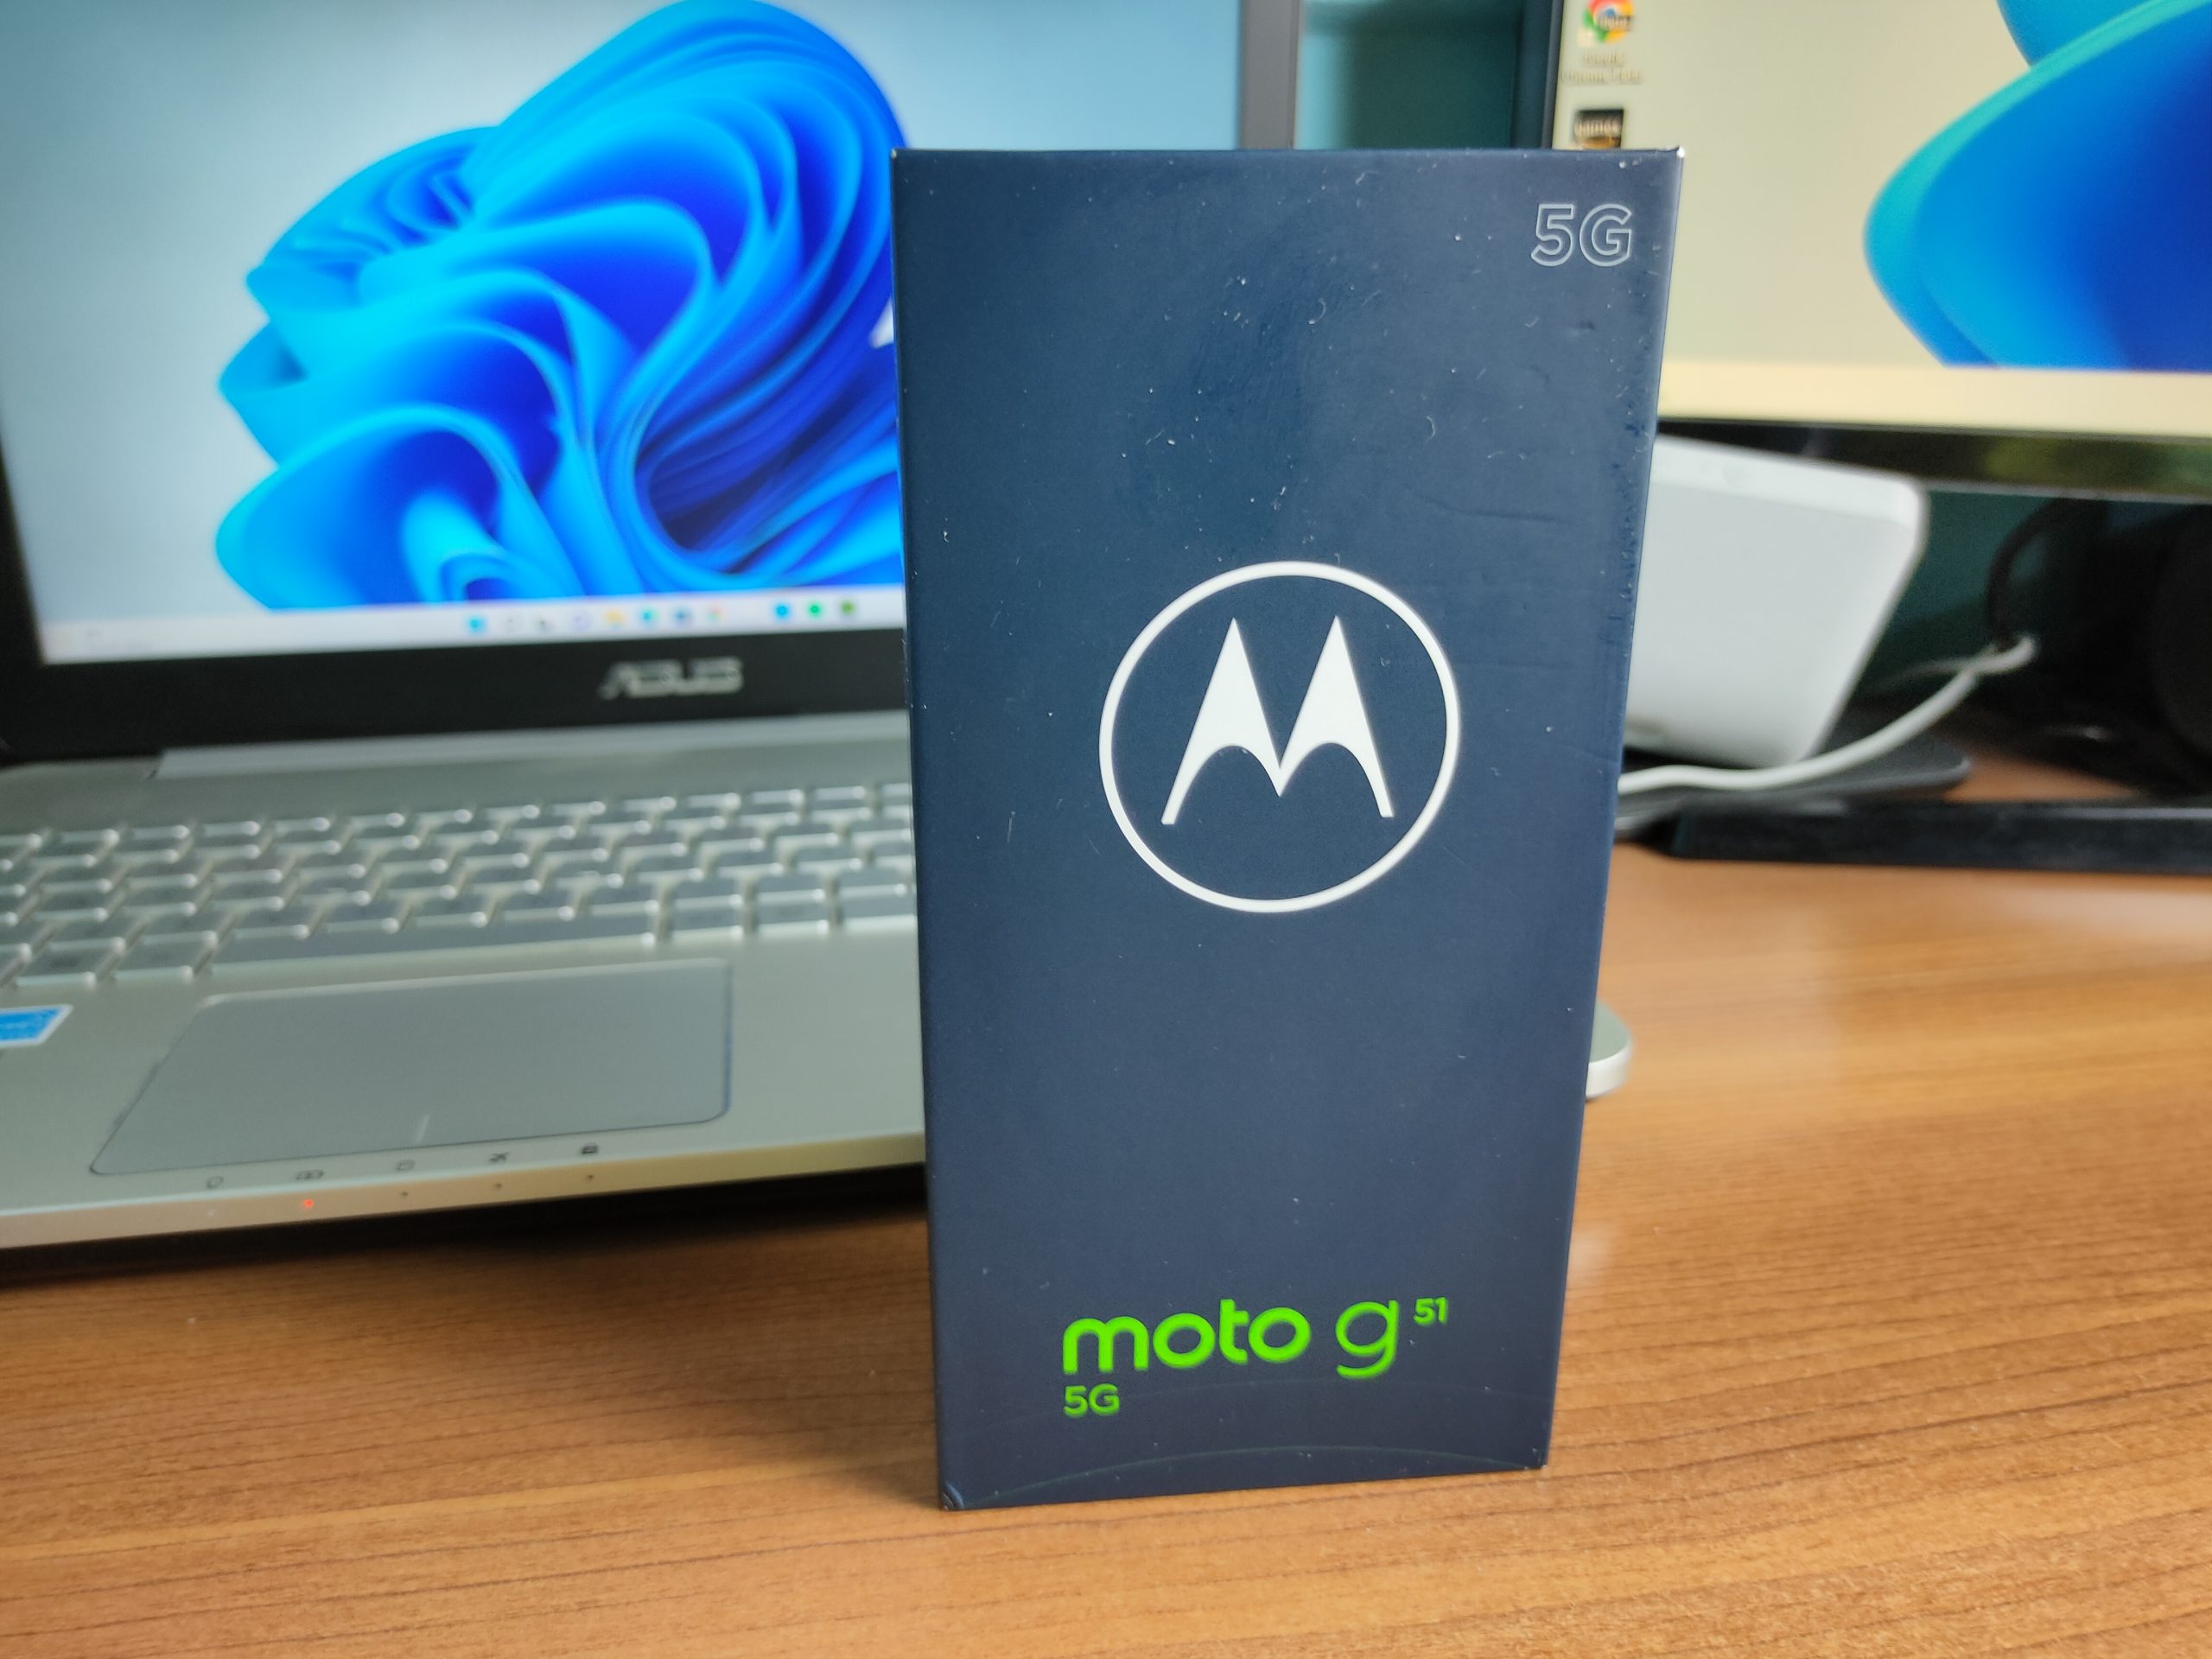 IMG20220401221736 scaled - Motorola Moto G51 5g recensione